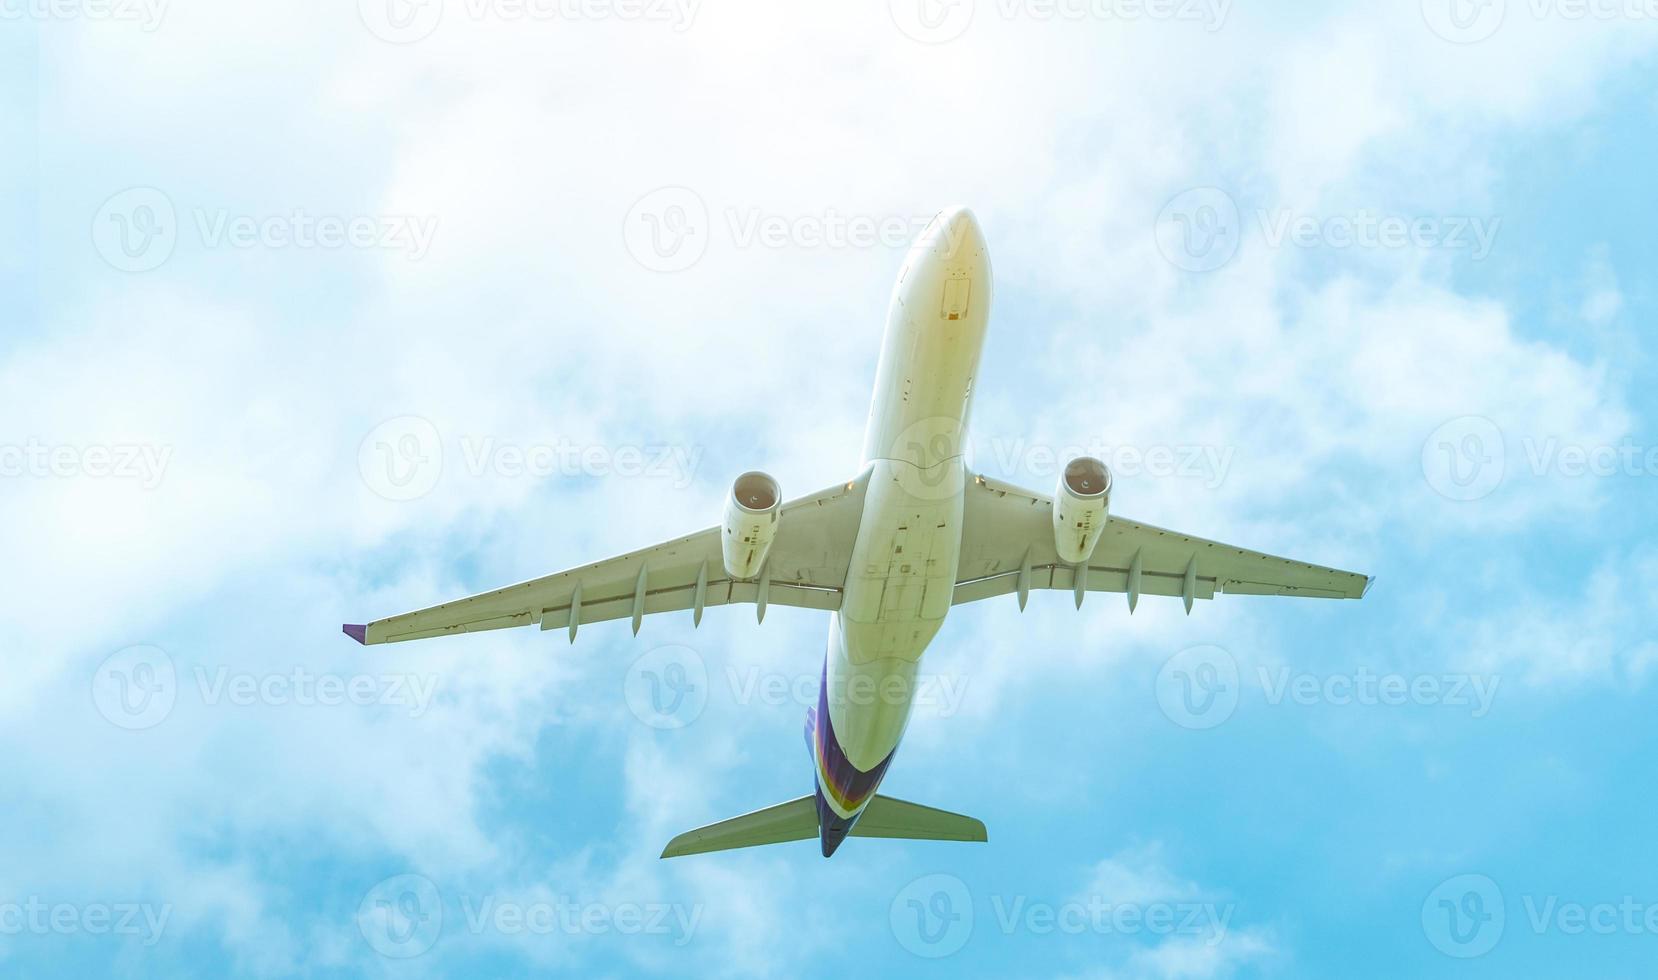 kommerzielle fluggesellschaft, die auf blauem himmel und weißen flauschigen wolken fliegt. unter Sicht des Flugzeugfliegens. Passagierflugzeug nach dem Start oder zum Landeflug. Urlaubsreisen ins Ausland. Lufttransport. foto